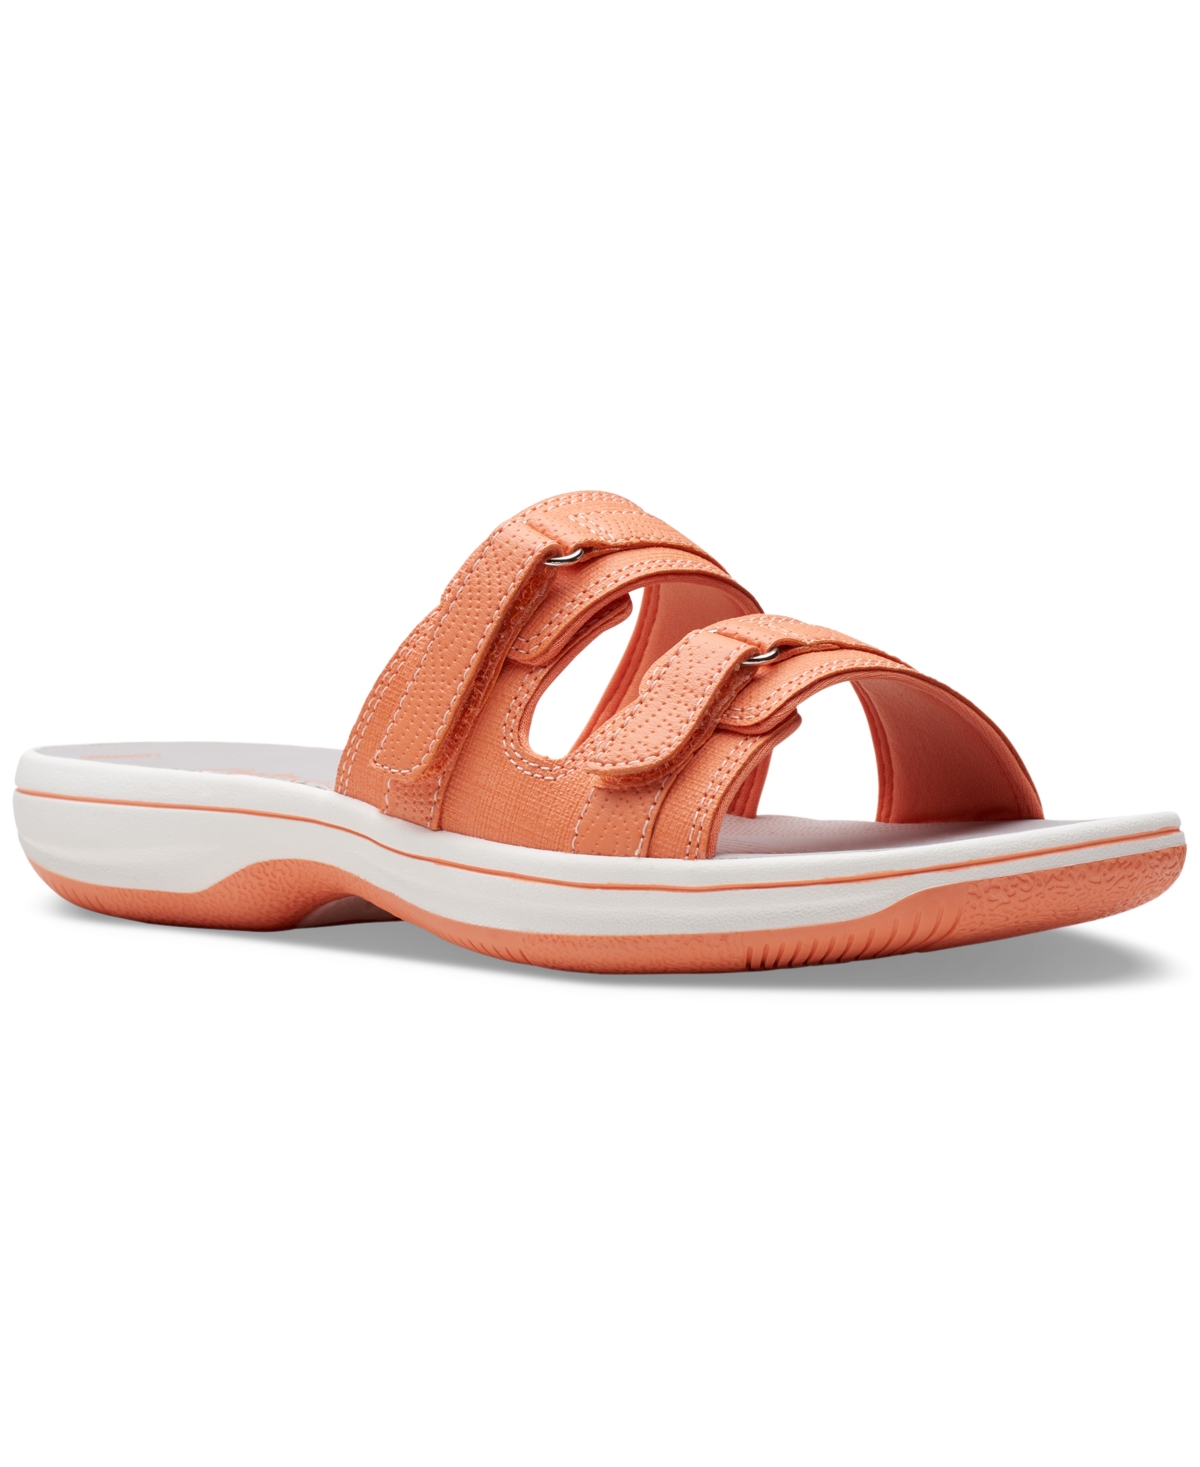 Clarks Women's Cloudsteppers Breeze Piper Comfort Slide Sandals In Tangerine